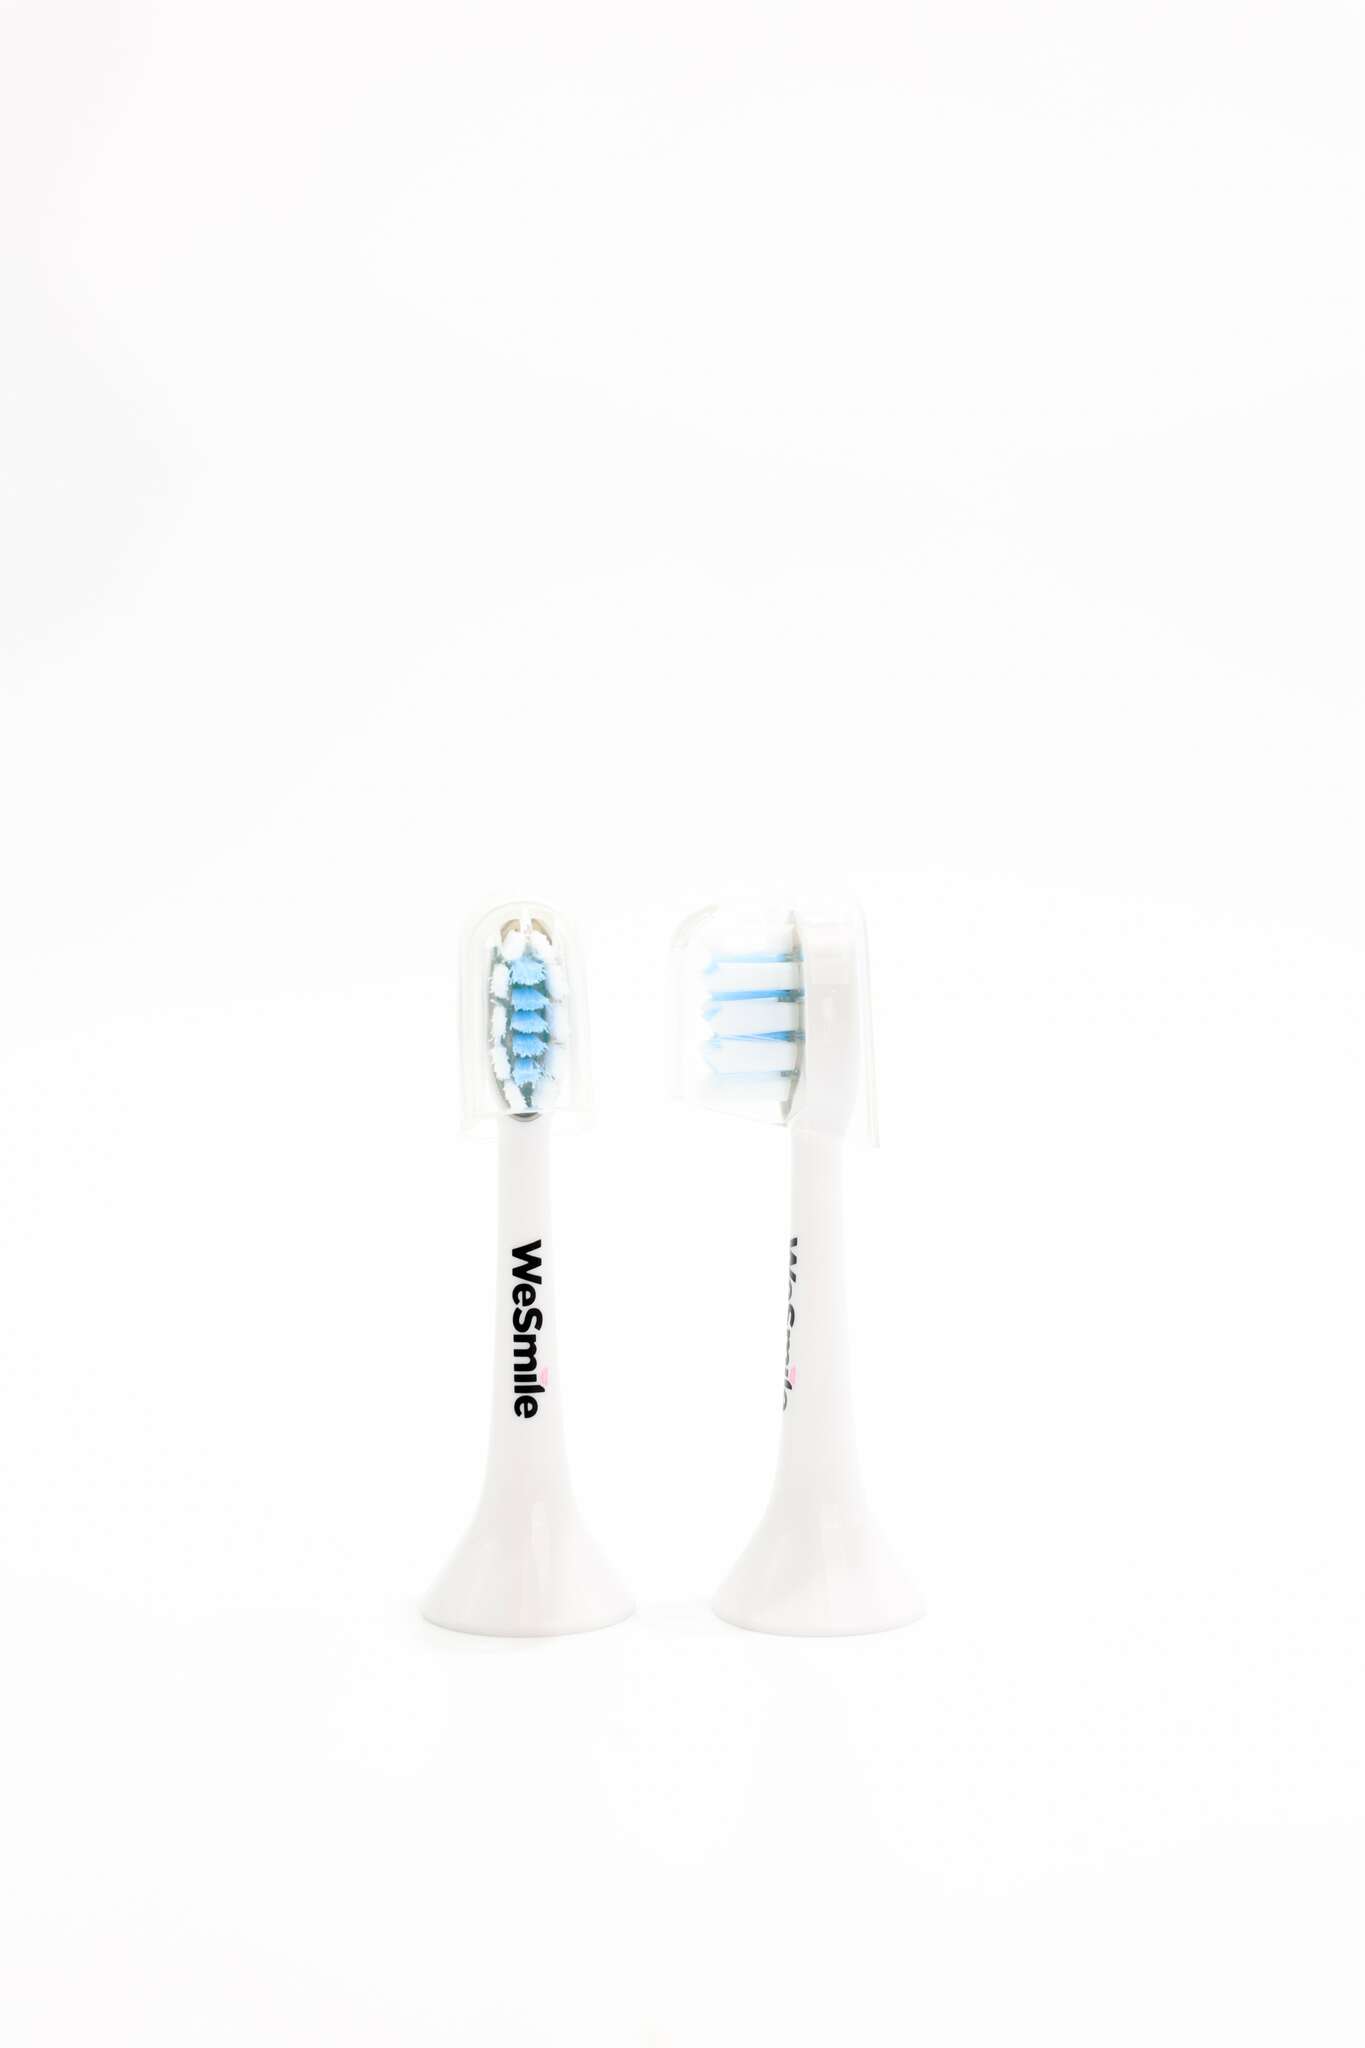 Köp nya tandborstehuvuden till Sonic Whitening LED Eltandborste WeSmile